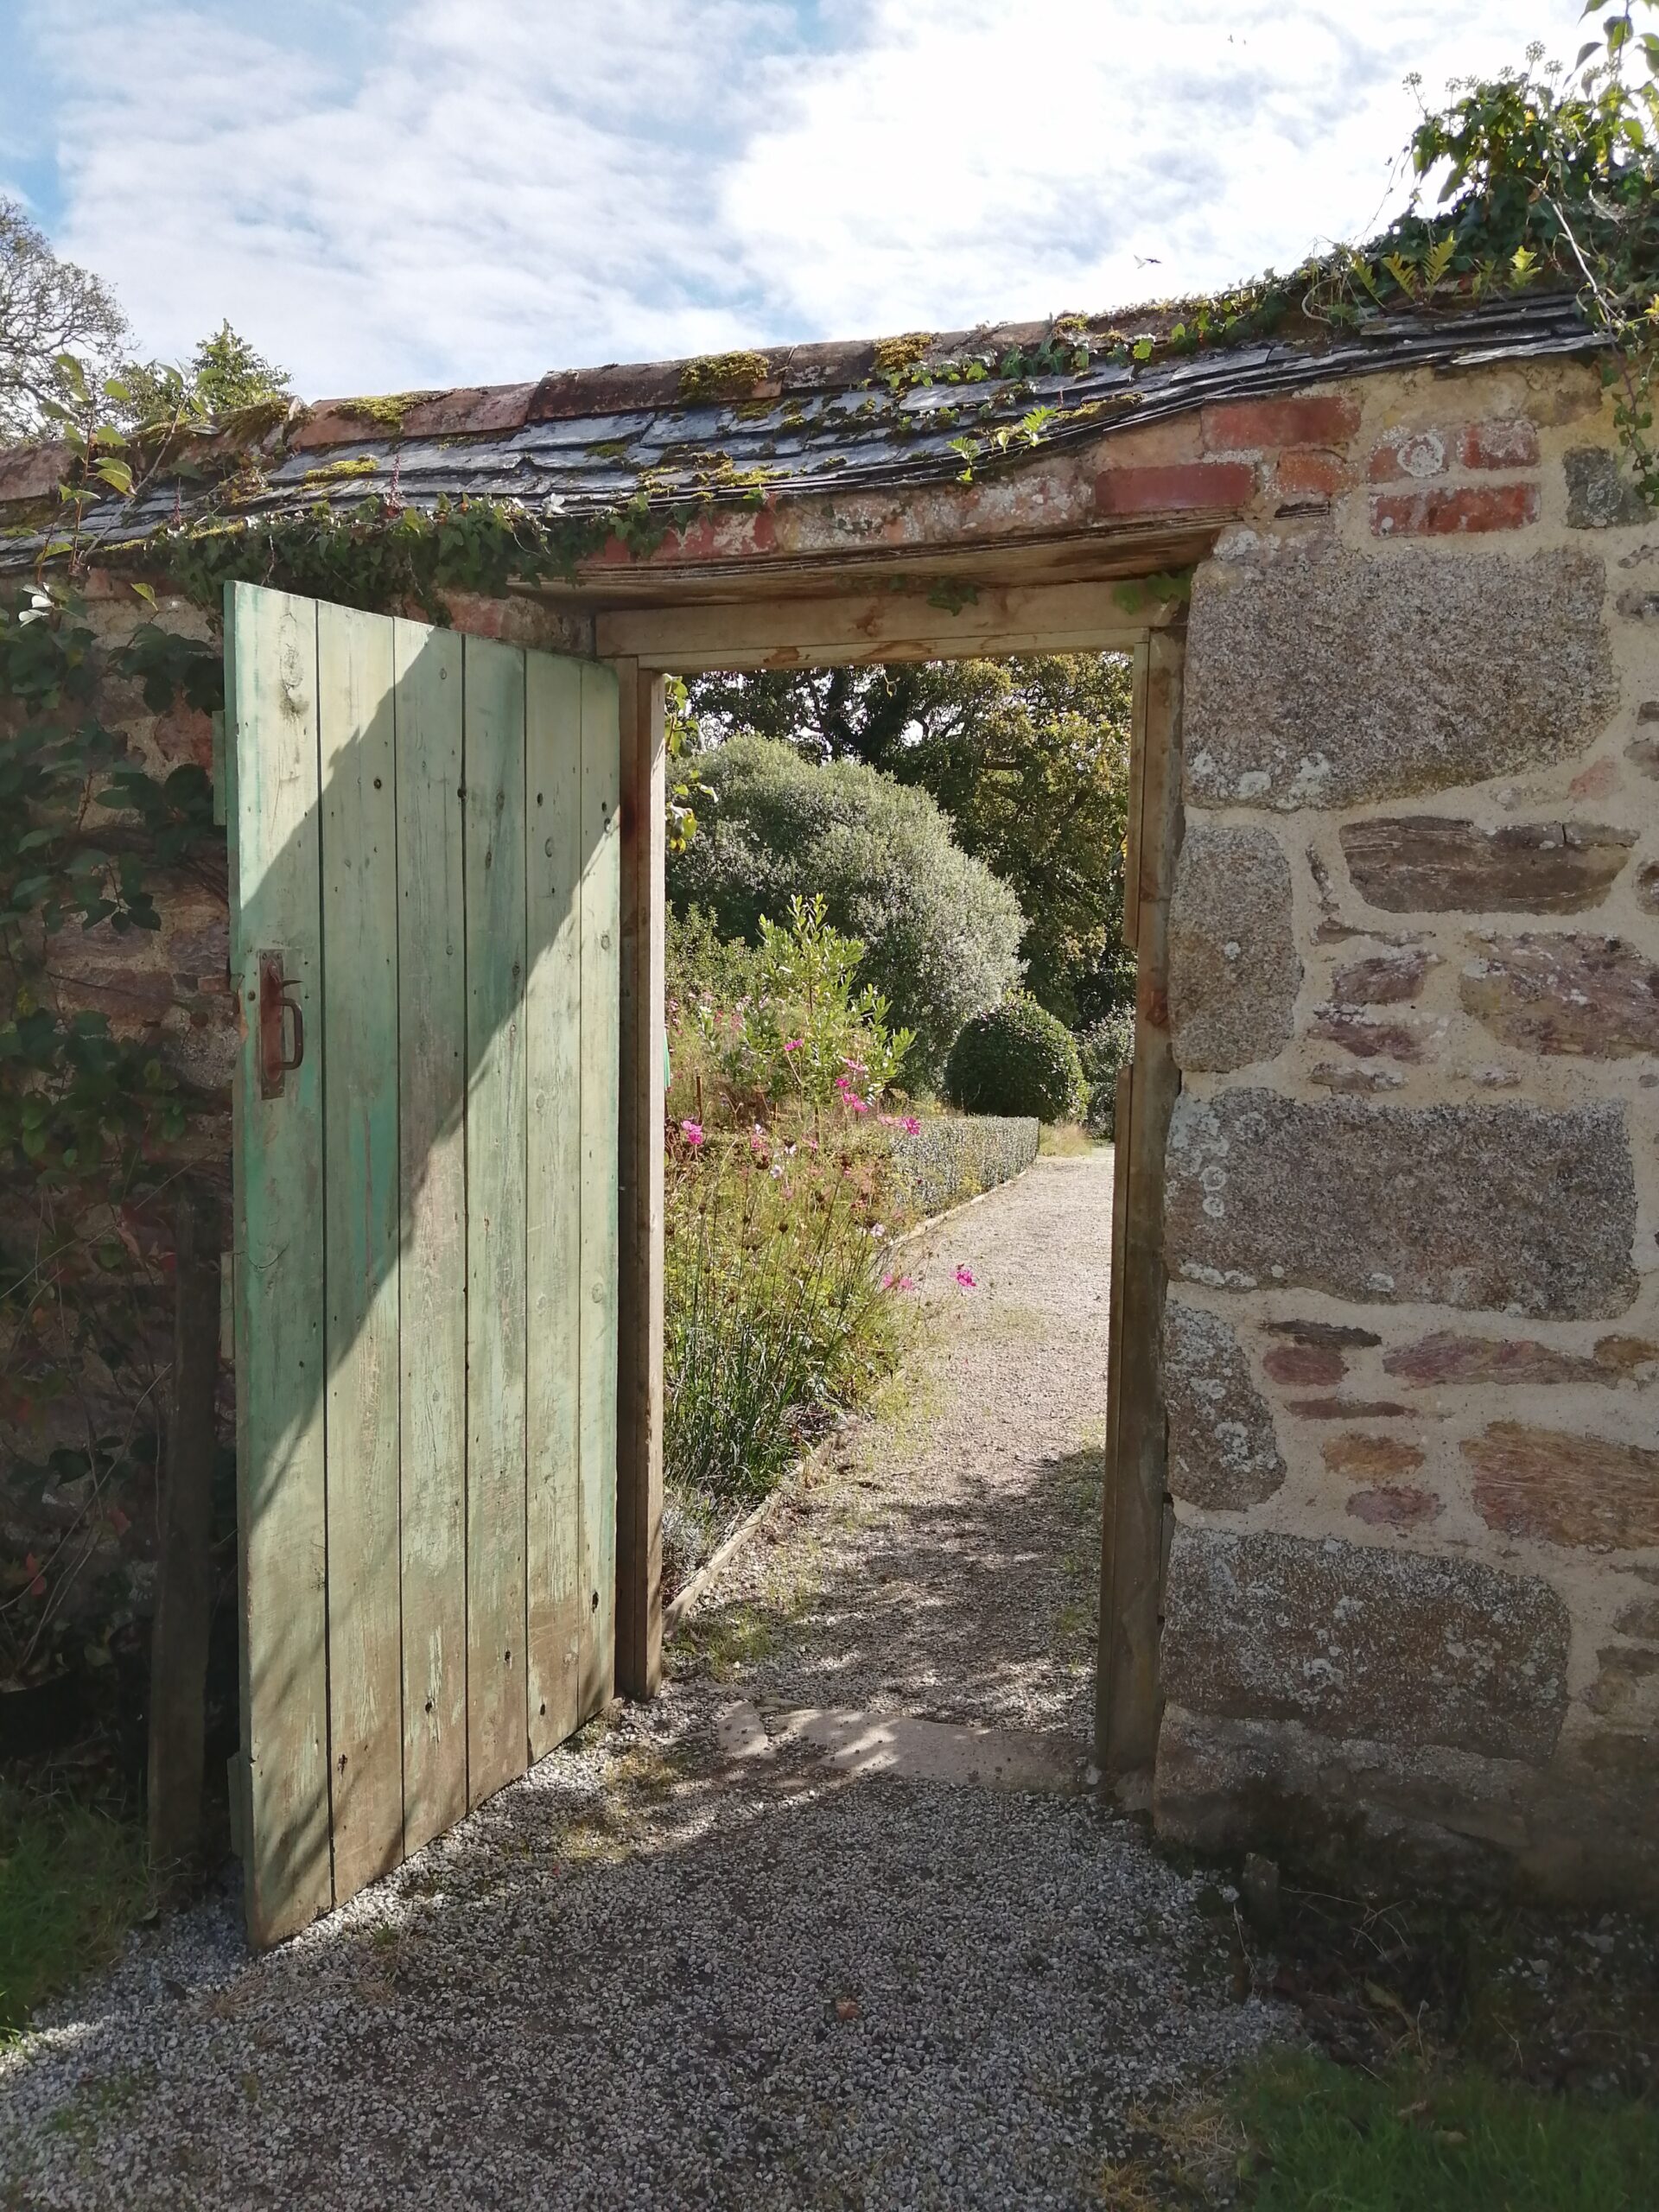 Wooden door in walled garden, open to reveal a view of the vegetable garden beyond